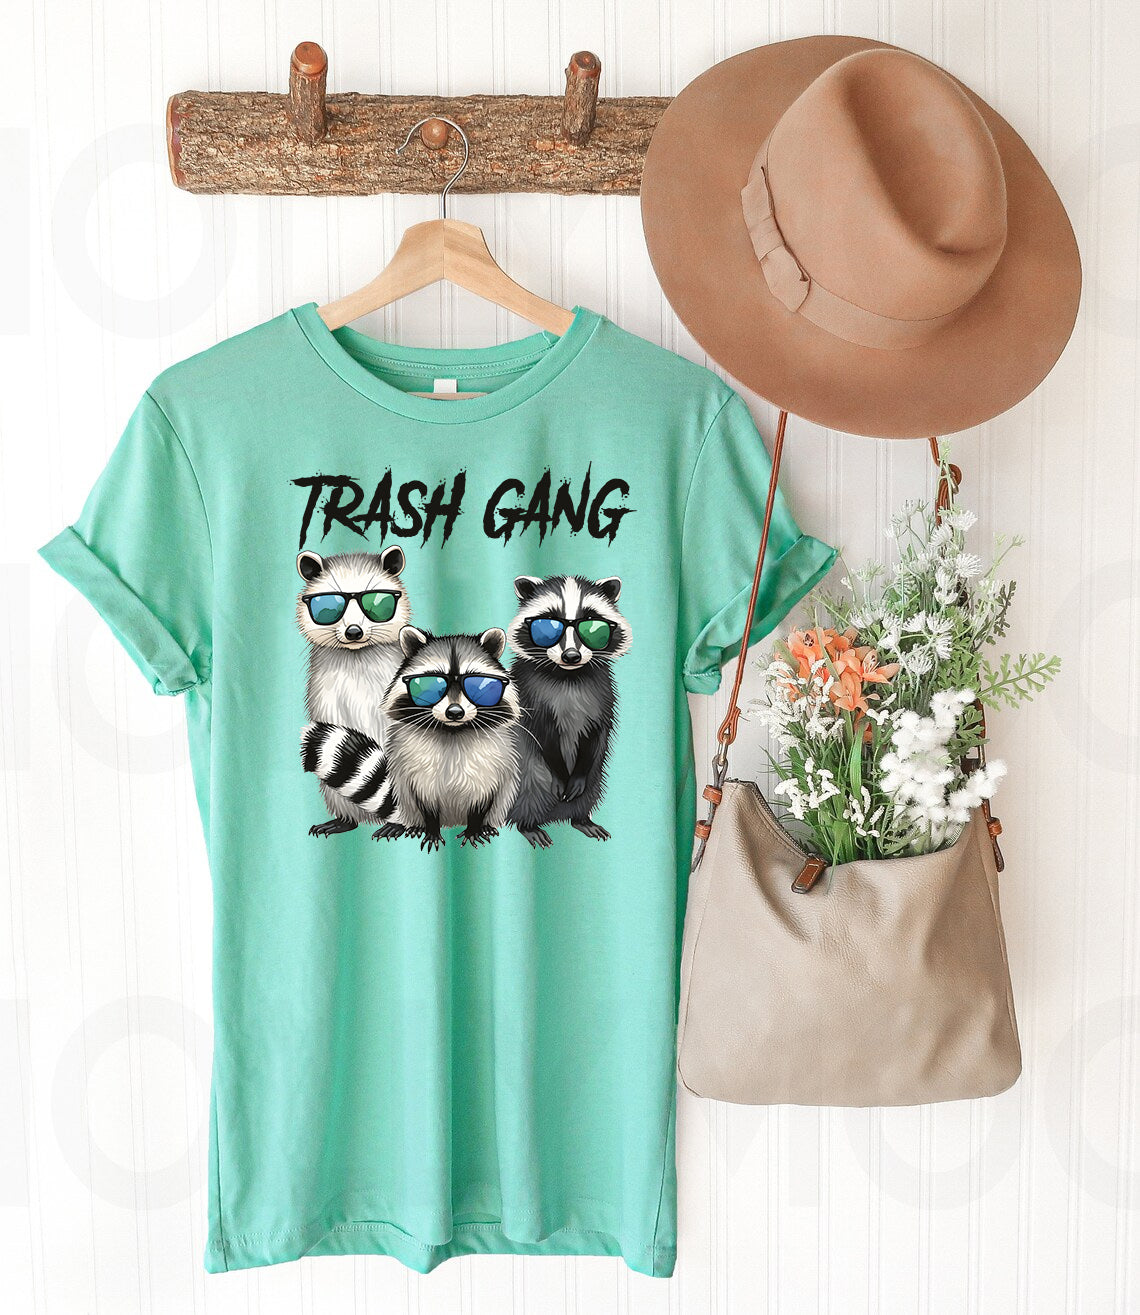 Trash Gang - Graphic Tee